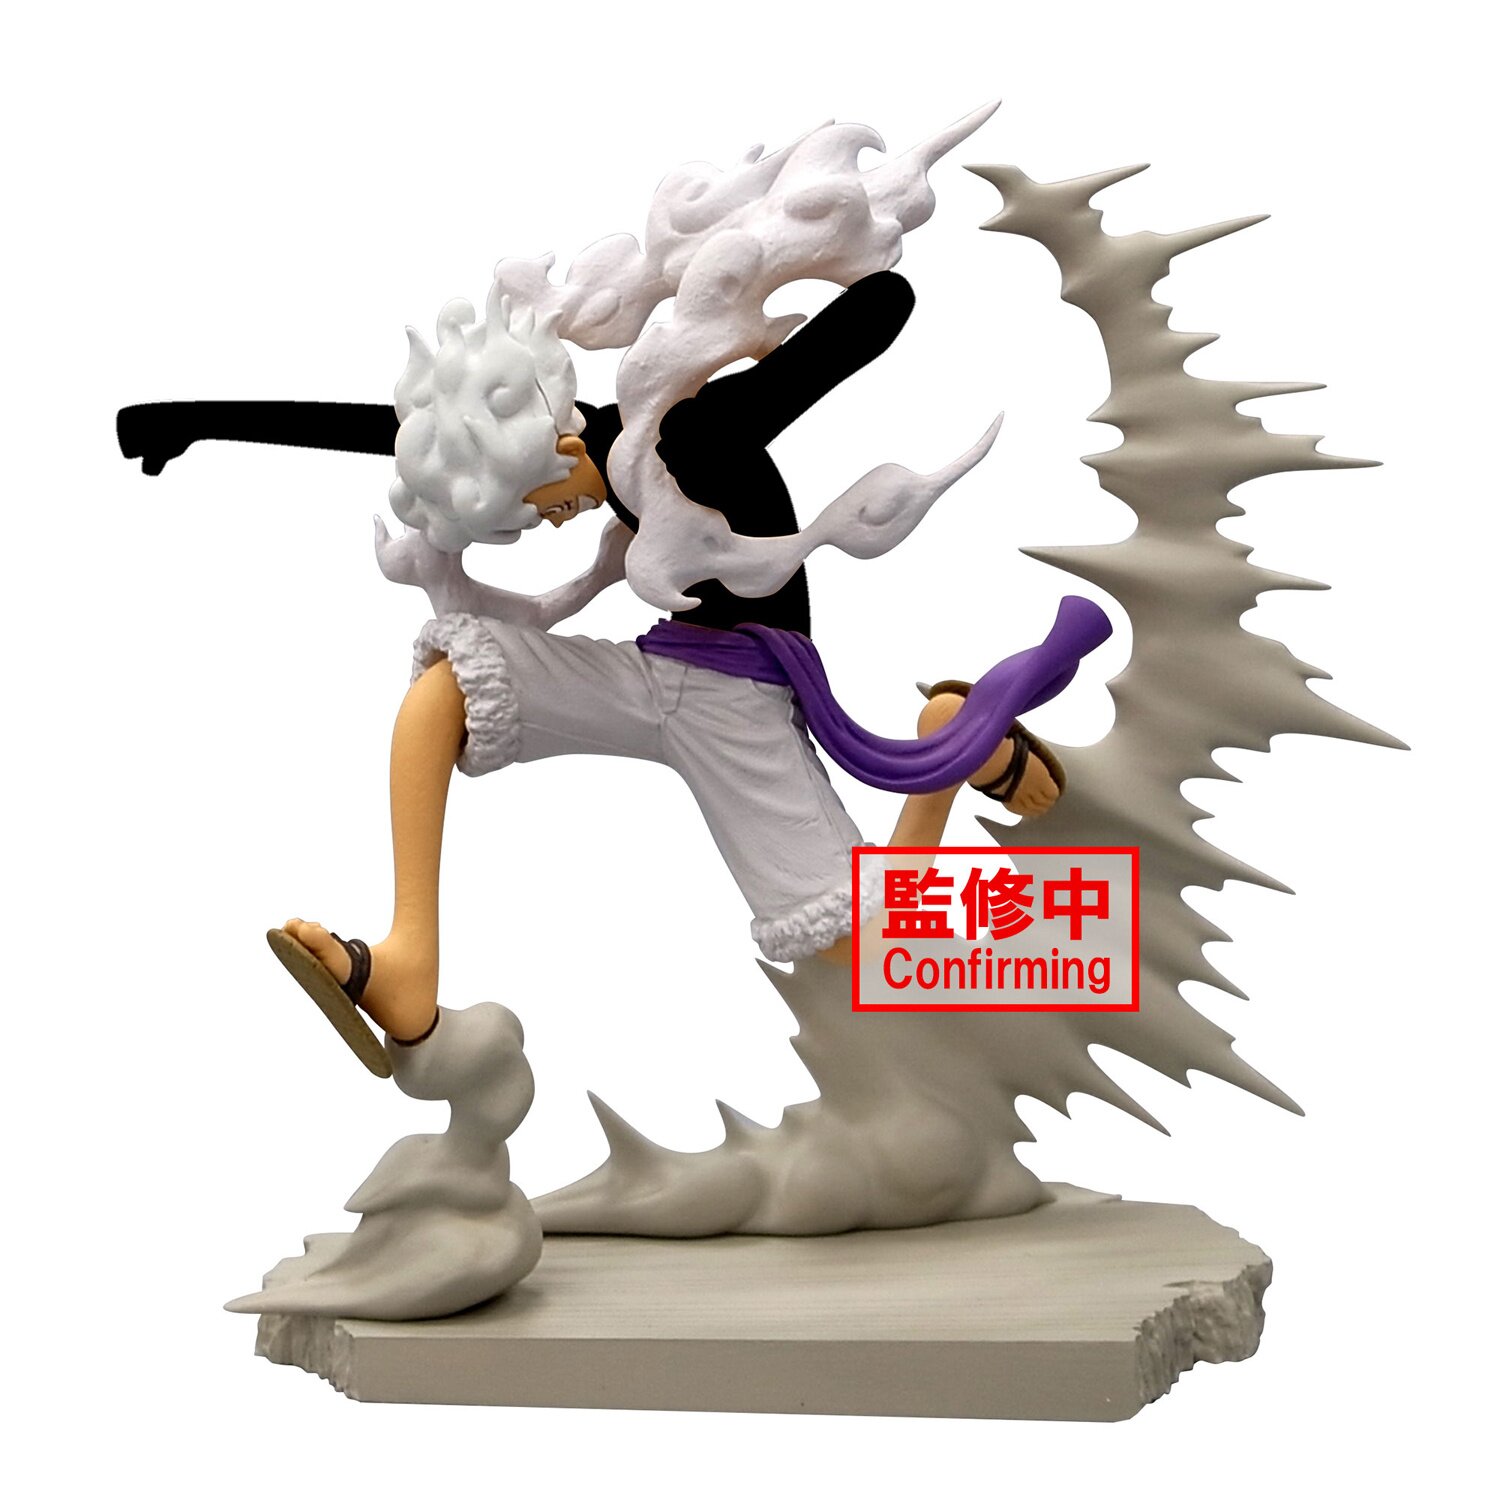 One Piece Senkozekkei Monkey D. Luffy -Gear 5- Non-Scale Figure